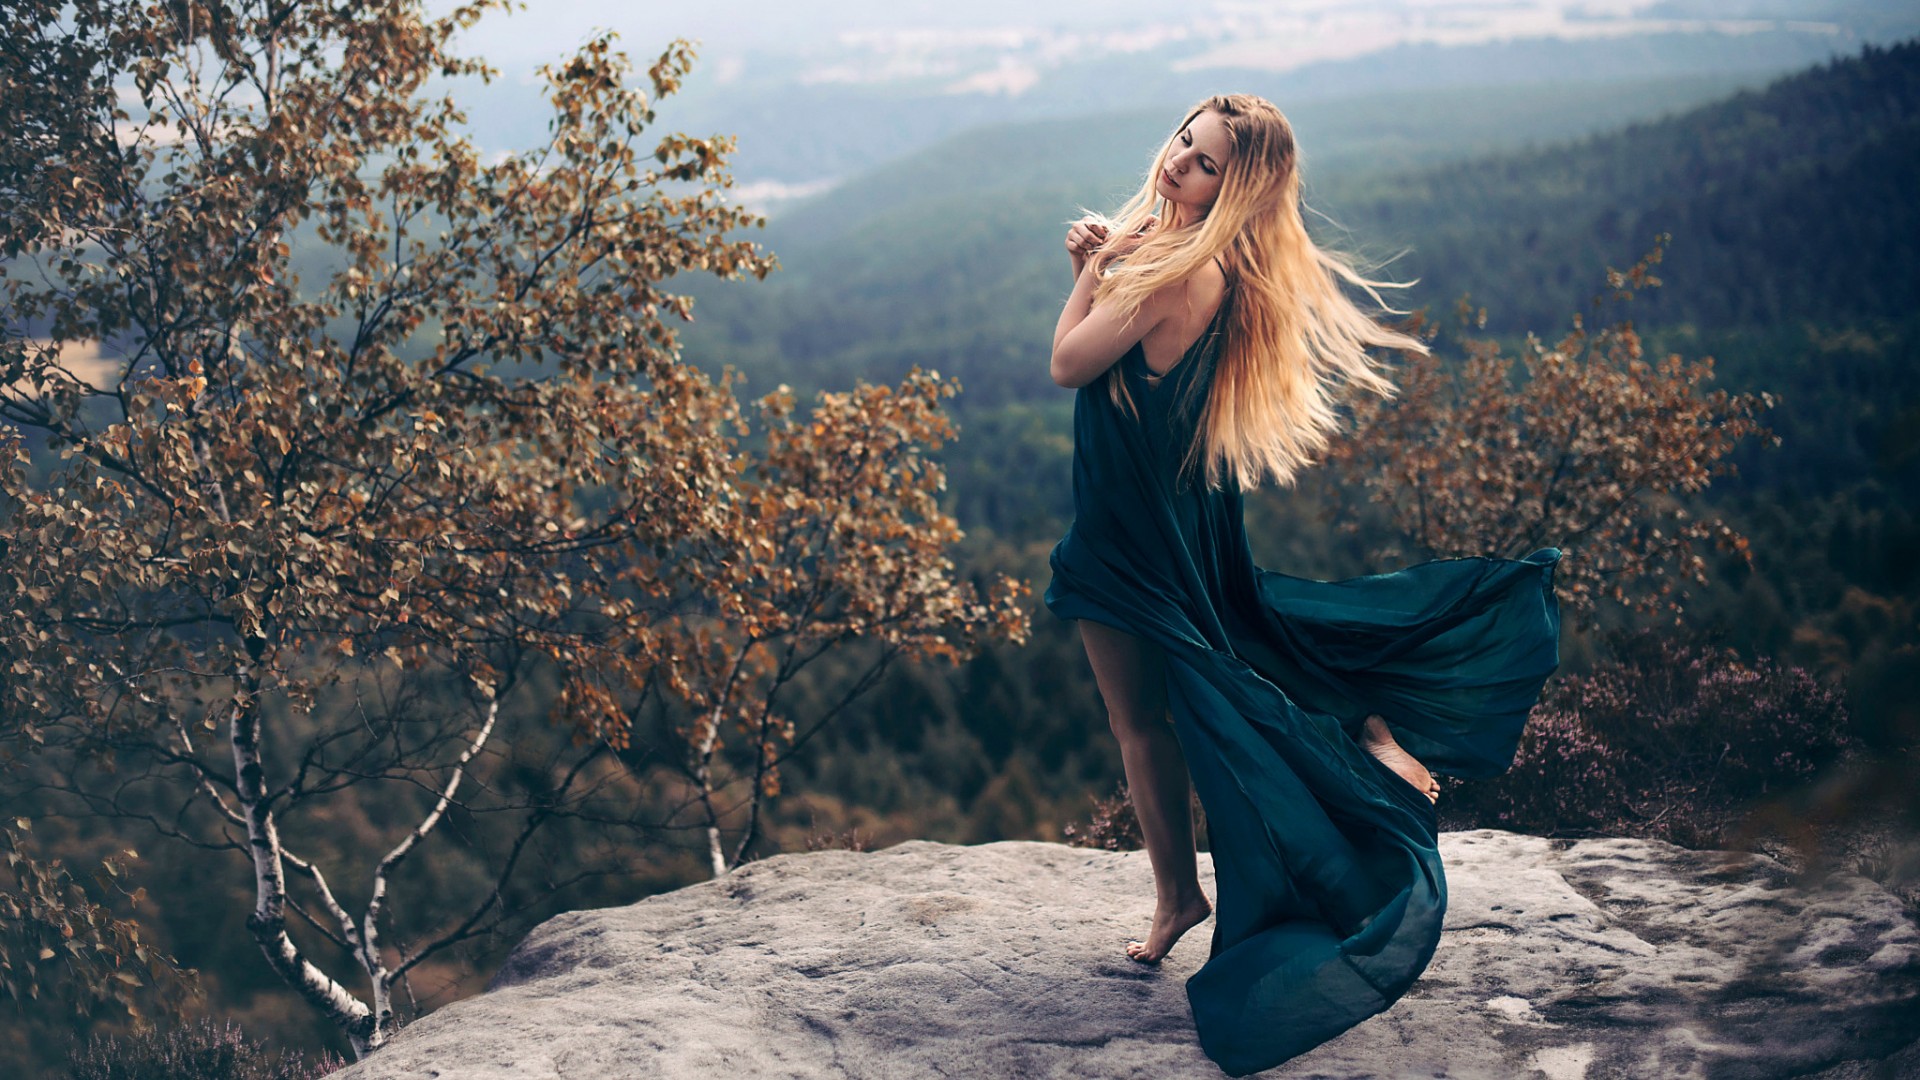 漂亮金发女孩,长裙子礼服,山上,岩石,美女风景壁纸